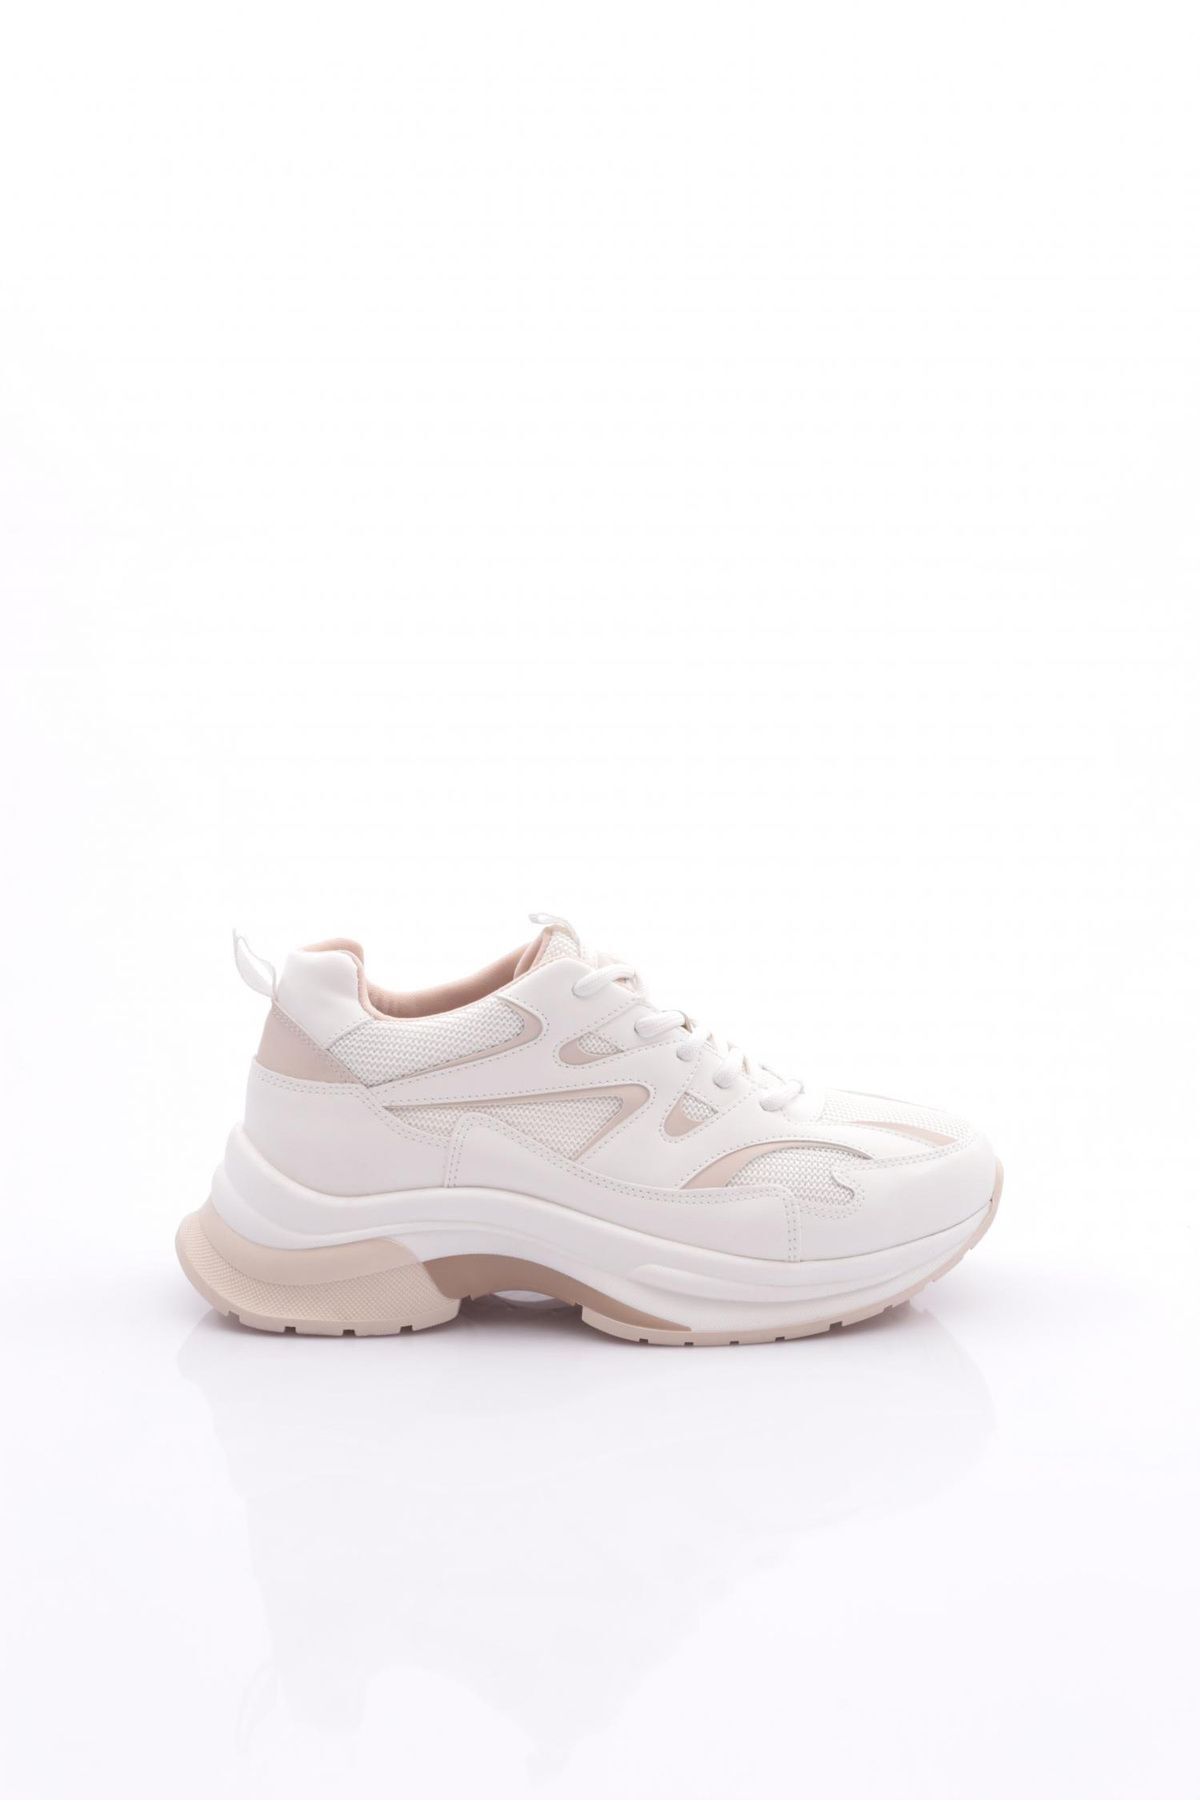 Dgn 30163 Kadın Bağcıklı Spor Ayakkabı Beyaz Bej